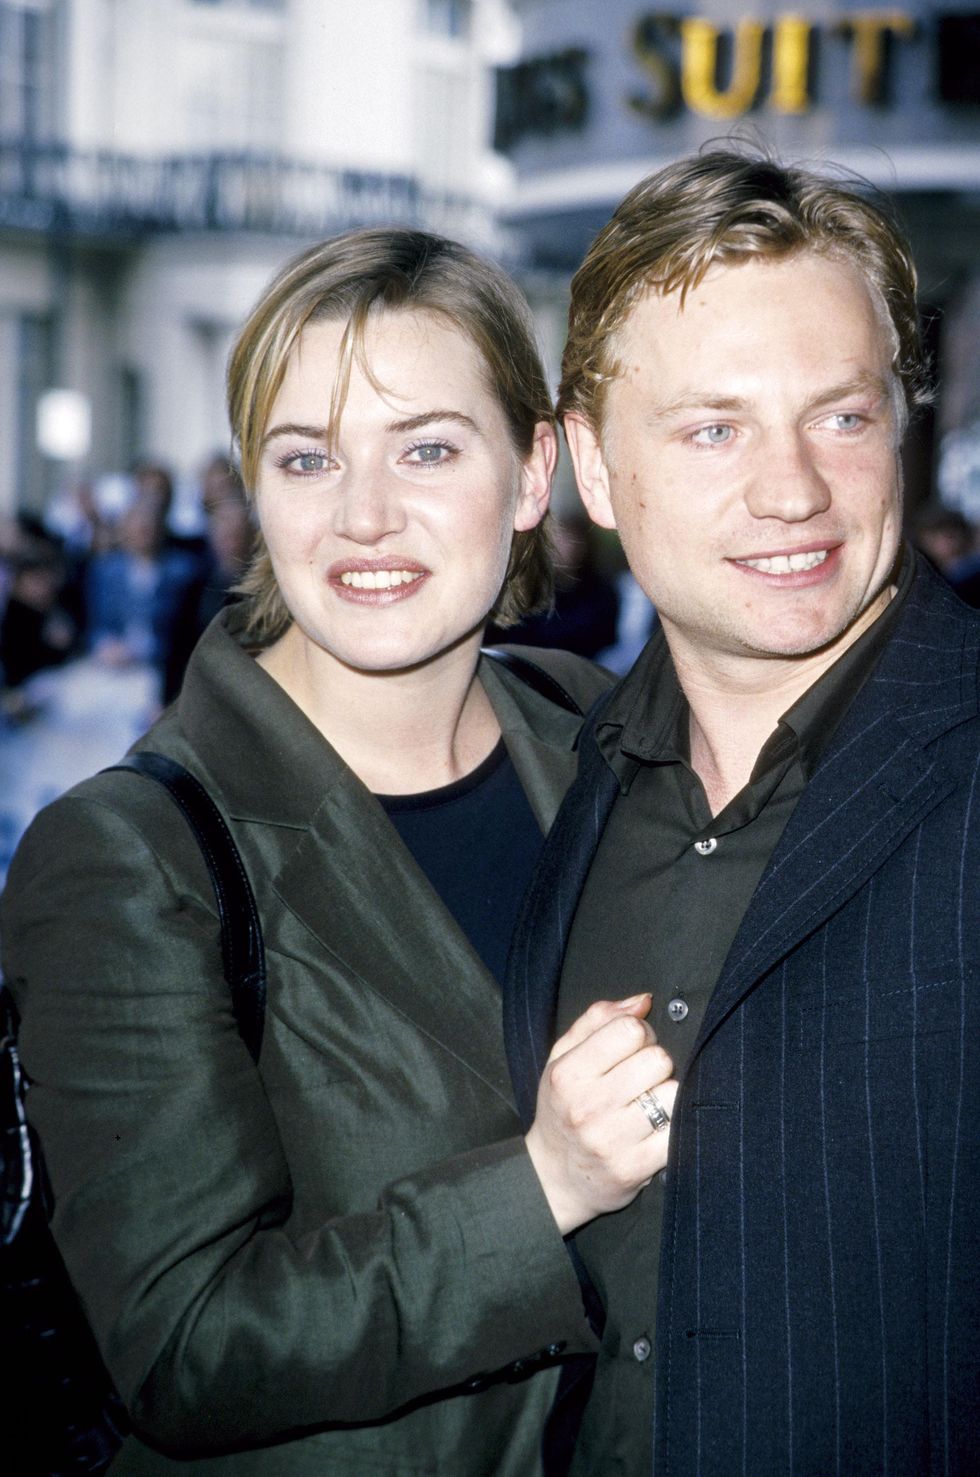 Kate Winslet col primo marito, Jim Threapleton, da cui ha avuto Mia, 16 anni